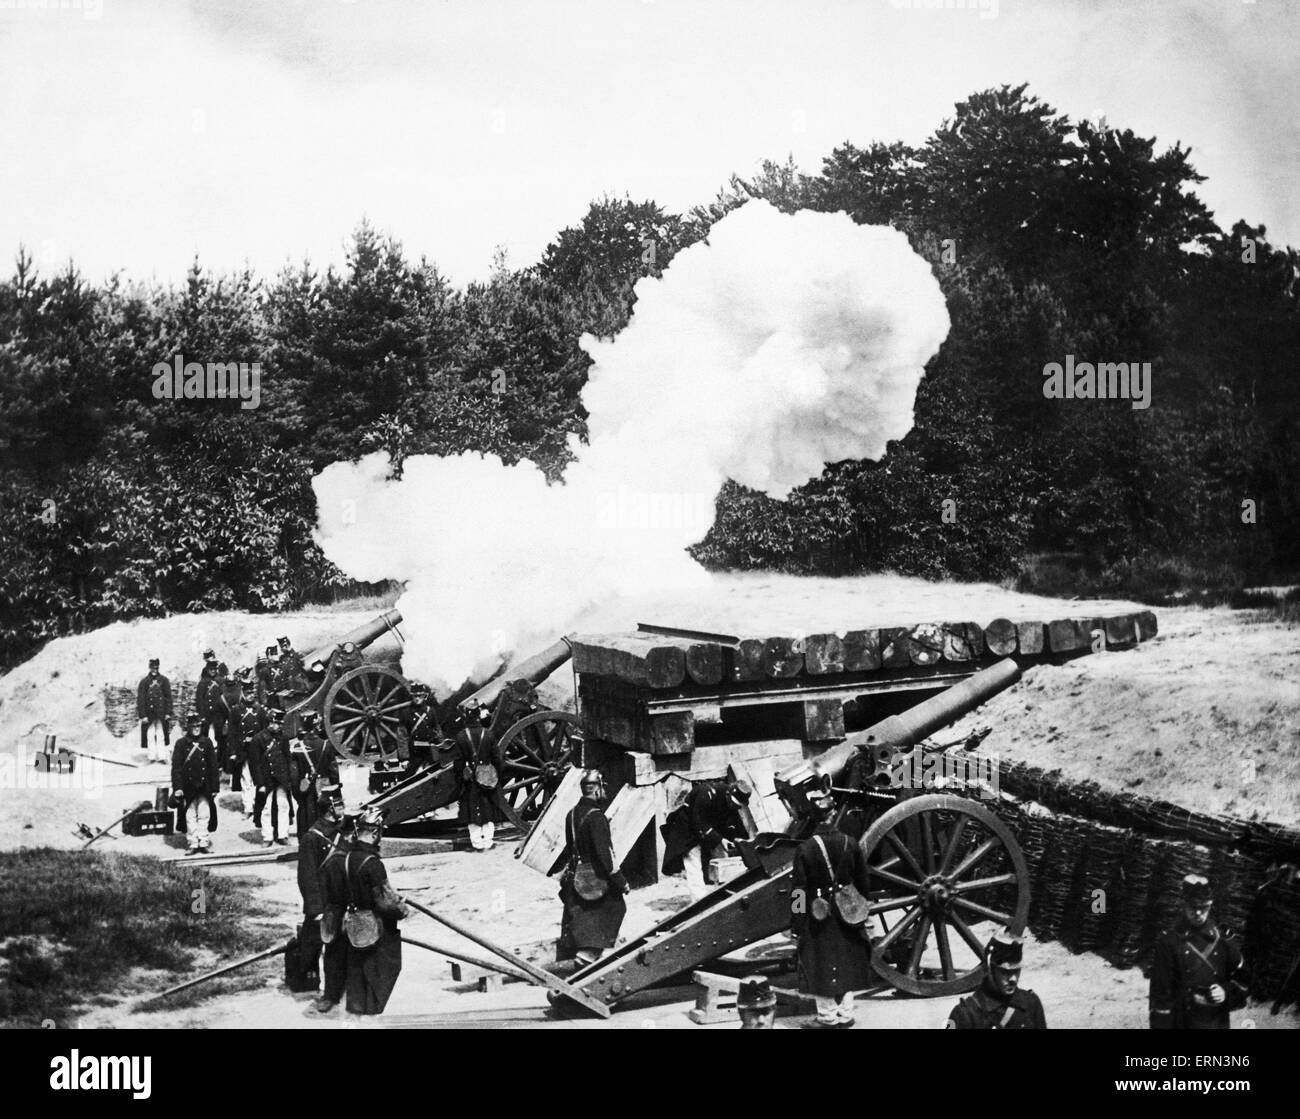 Un fort belge près d'Anvers en réponse à l'incendie de shell l'artillerie allemande. Vers septembre 1914 Banque D'Images